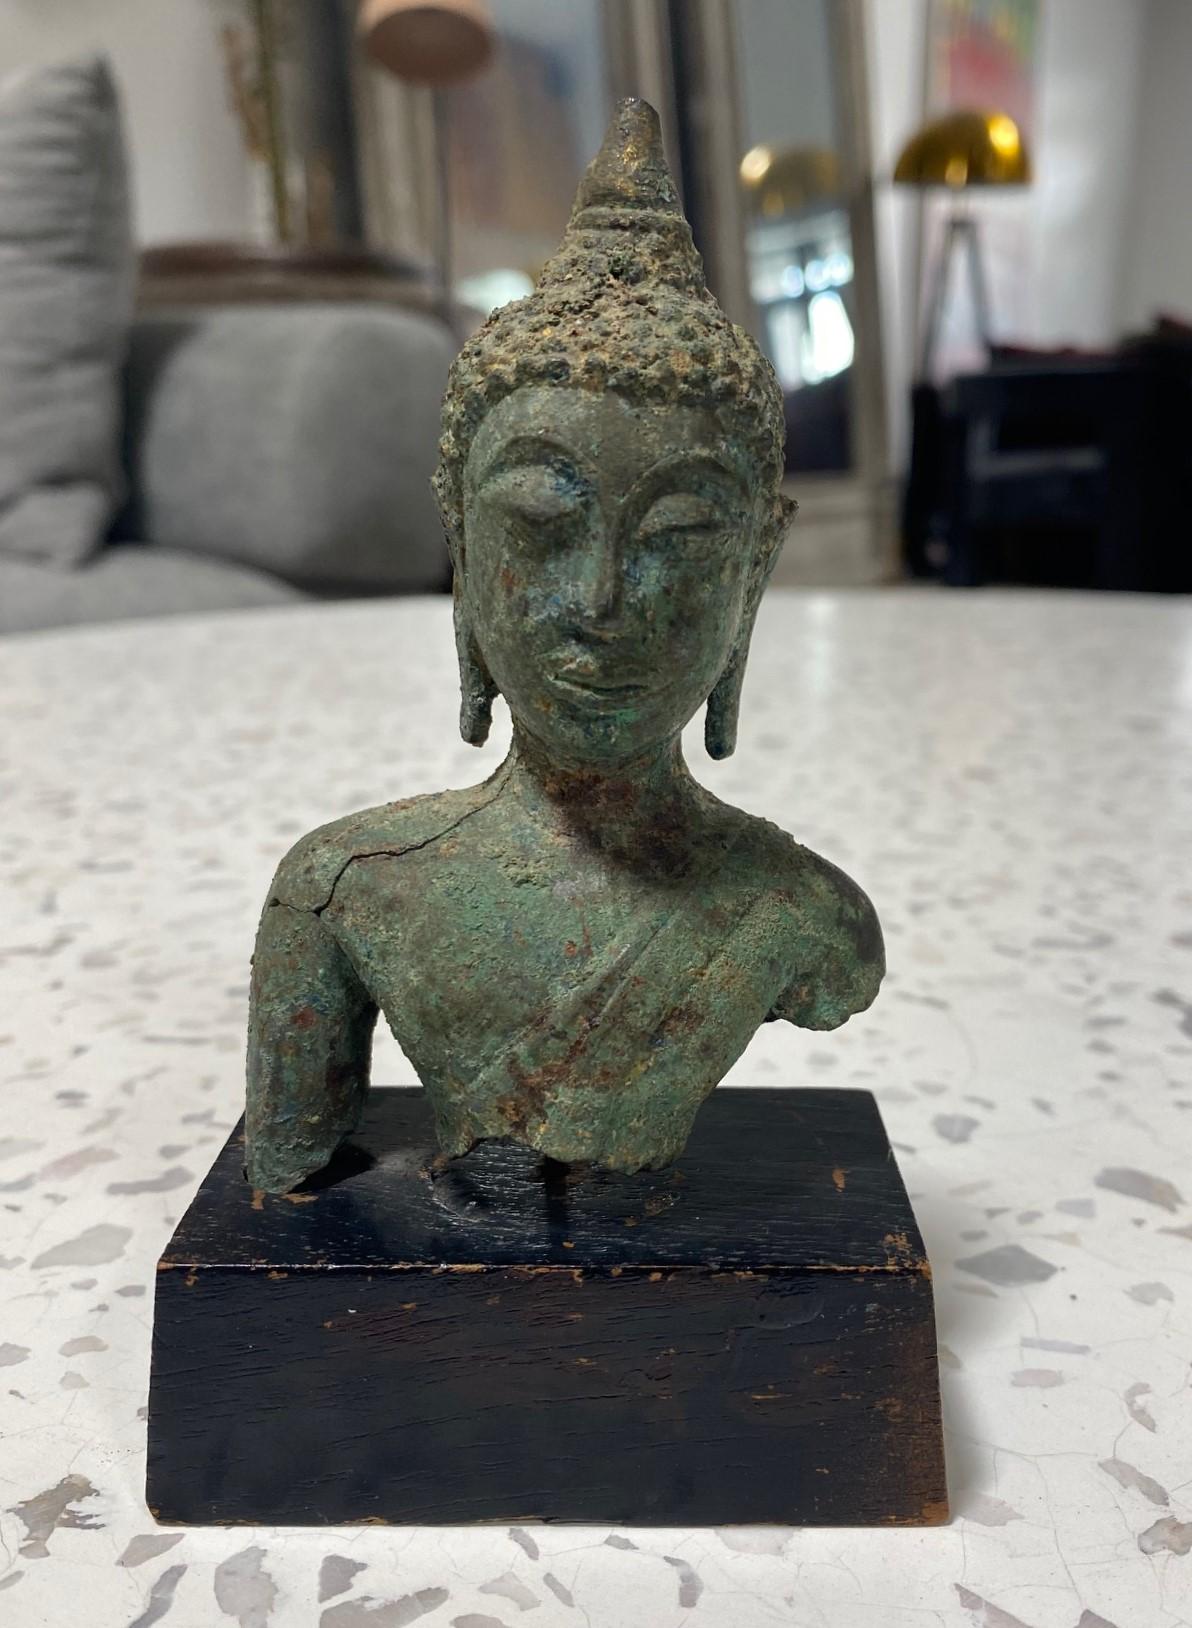 Tête de bouddha en bronze magnifiquement sculptée, originaire de Thaïlande/ Siam et du sud-est asiatique, sur un socle en bois personnalisé. Le Bouddha a les yeux fermés dans une méditation sereine. Cette belle pierre précieuse a un toucher et un